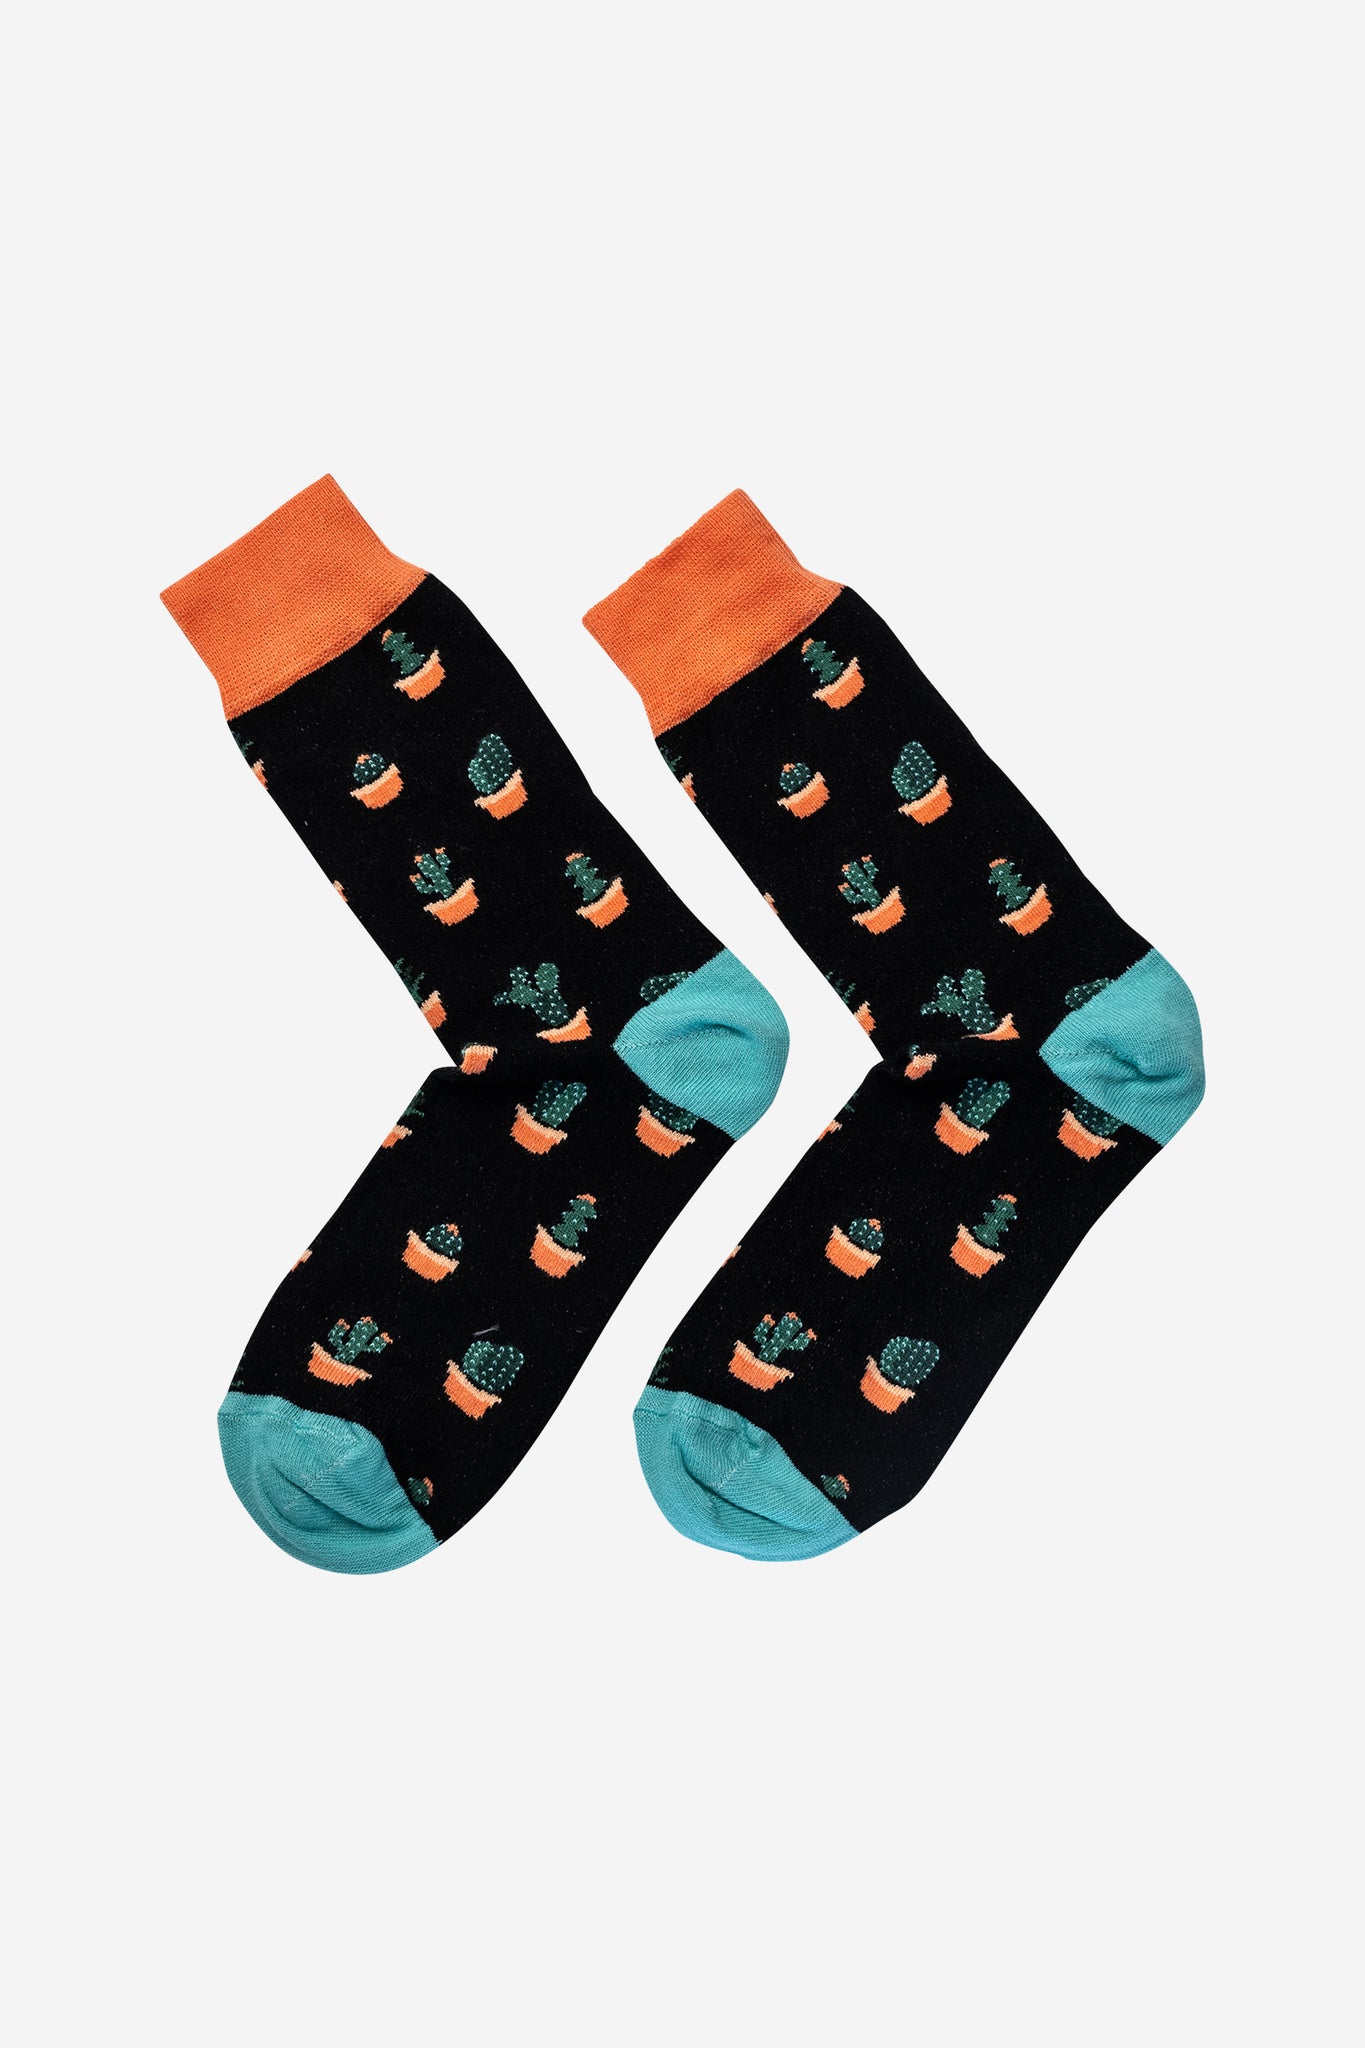 Schwarze Socken mit blauen und orangen Details und Kaktus-Muster. Unisex, mittellang und angenehme Passform